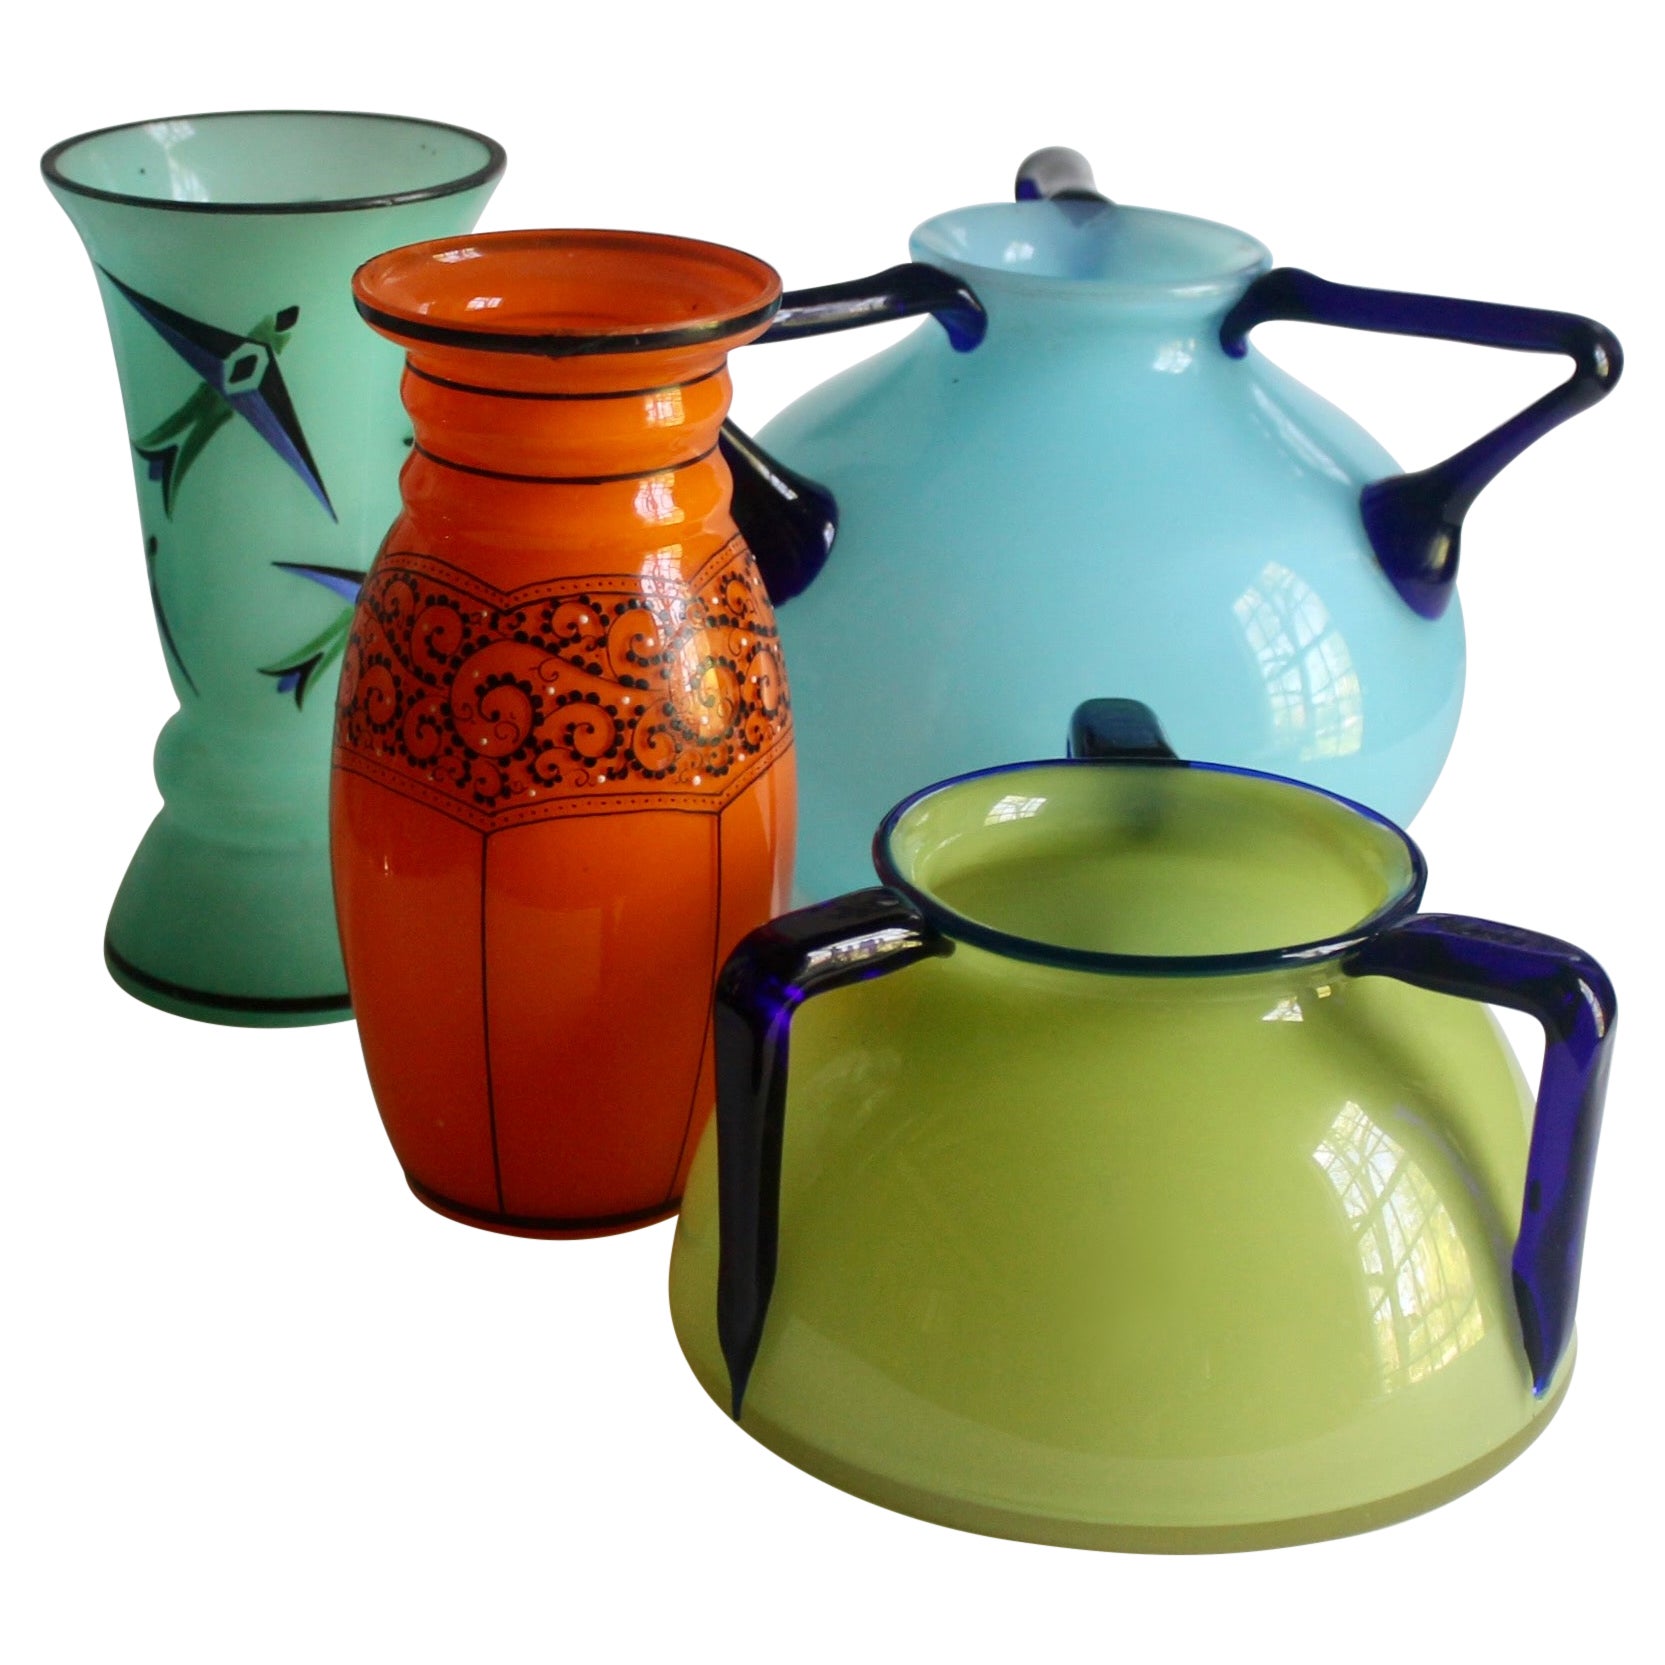 Tschechische Vasen aus „Tango-Glas“ nach Art von Michael Powolny und der Wiener Werkstatte 